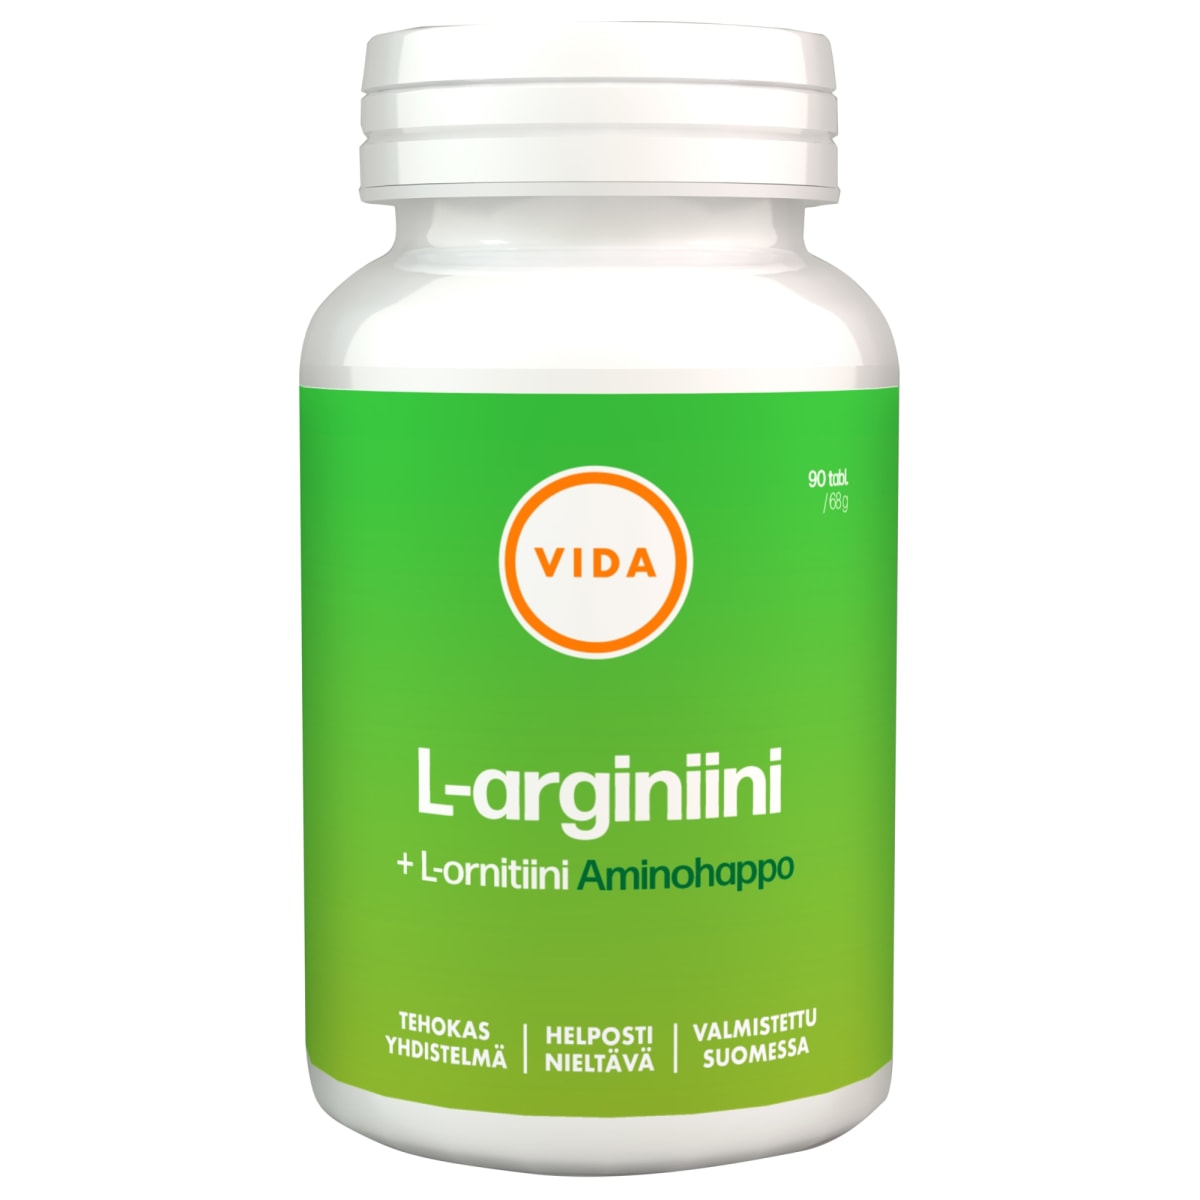 Vida L-arginiini + L-ornitiini 90 tabl. ravintolisä   verkkokauppa